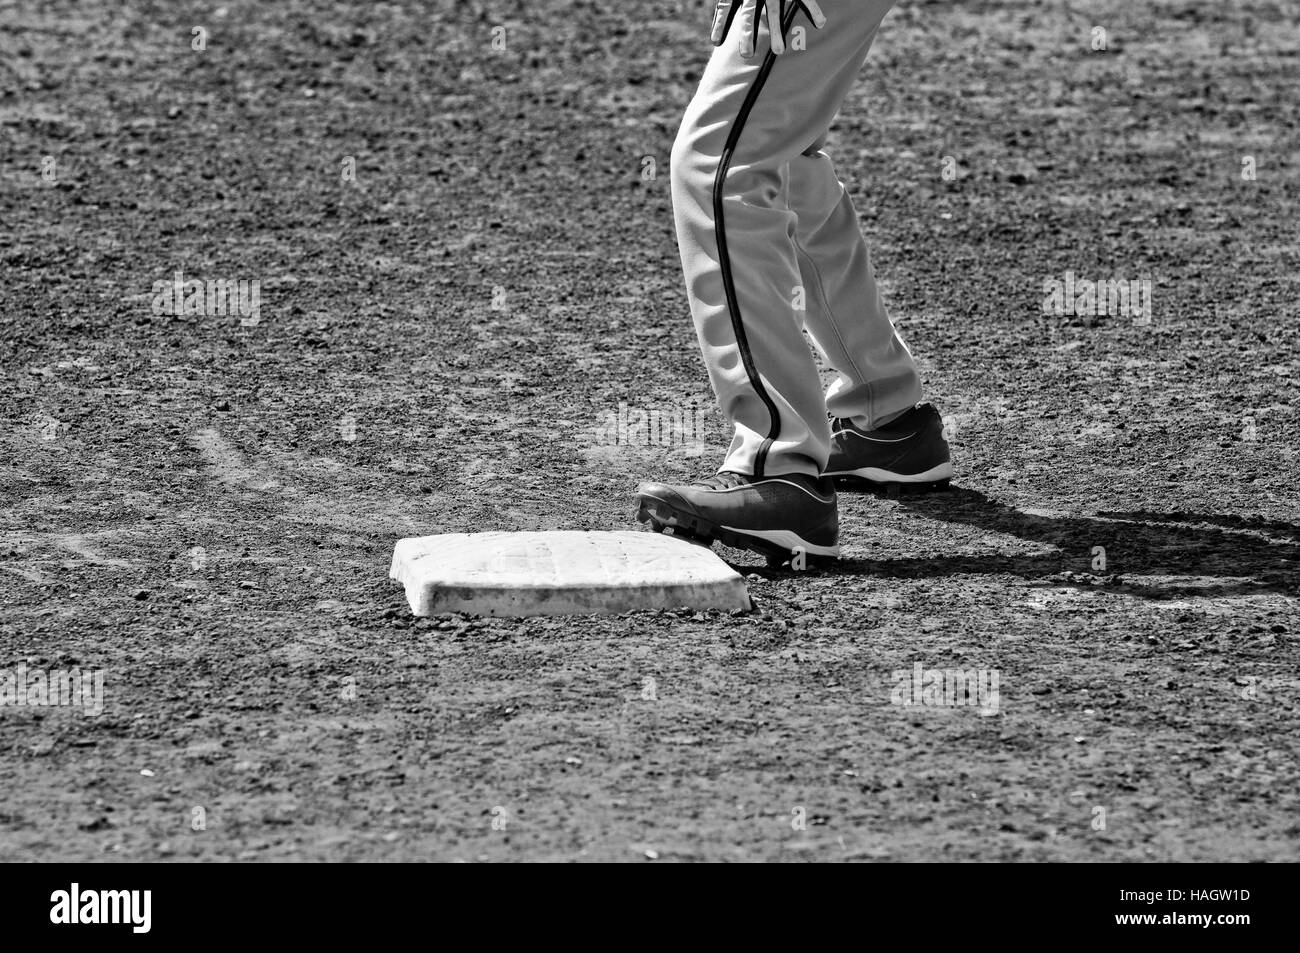 Chiudere fino in bianco e nero di base di baseball con il giocatore in piedi su di esso. Foto Stock